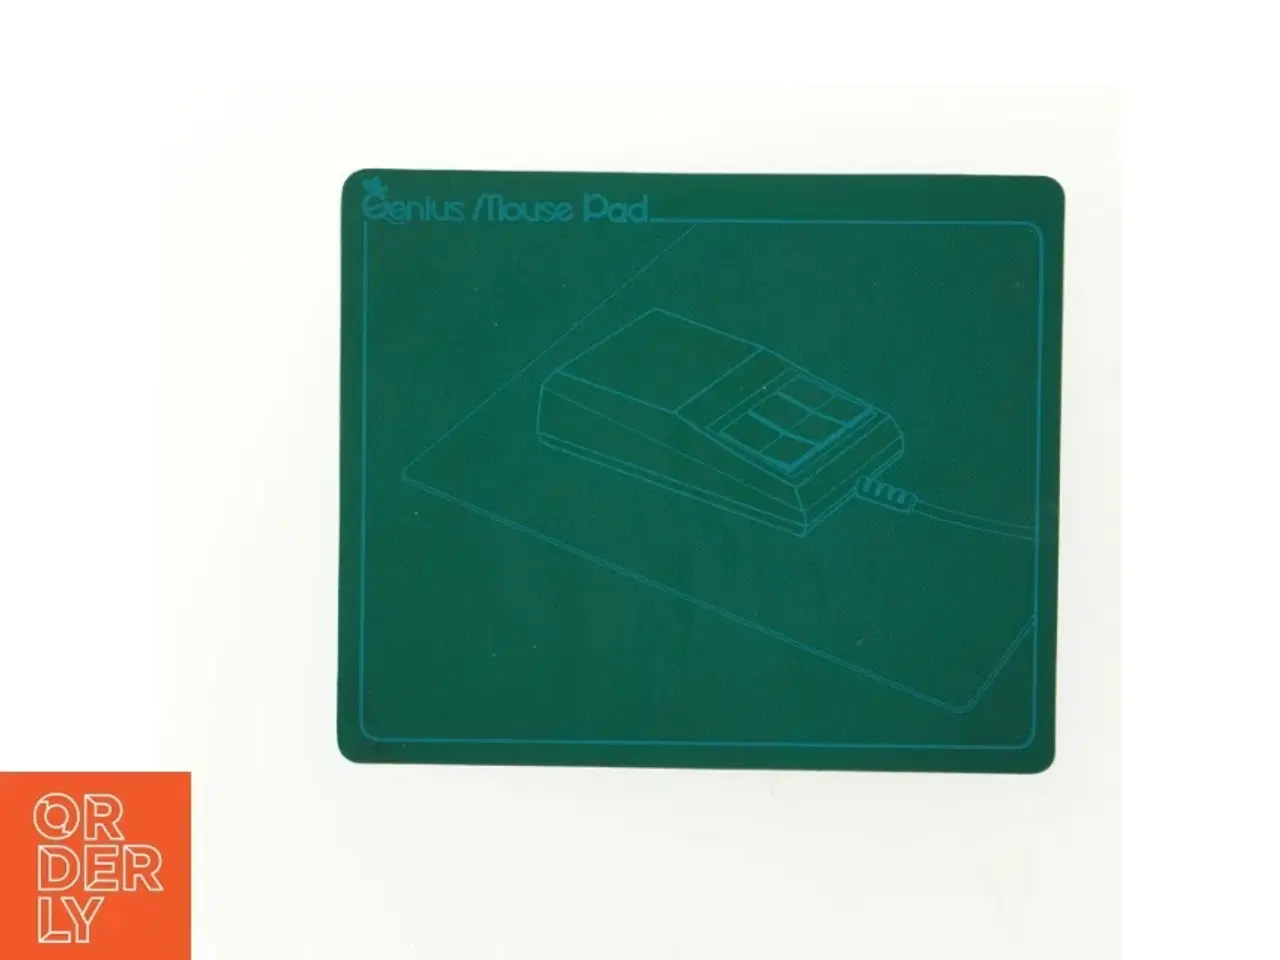 Billede 3 - Cutting pad og mousepad fra Genius (str. 22 x 18)